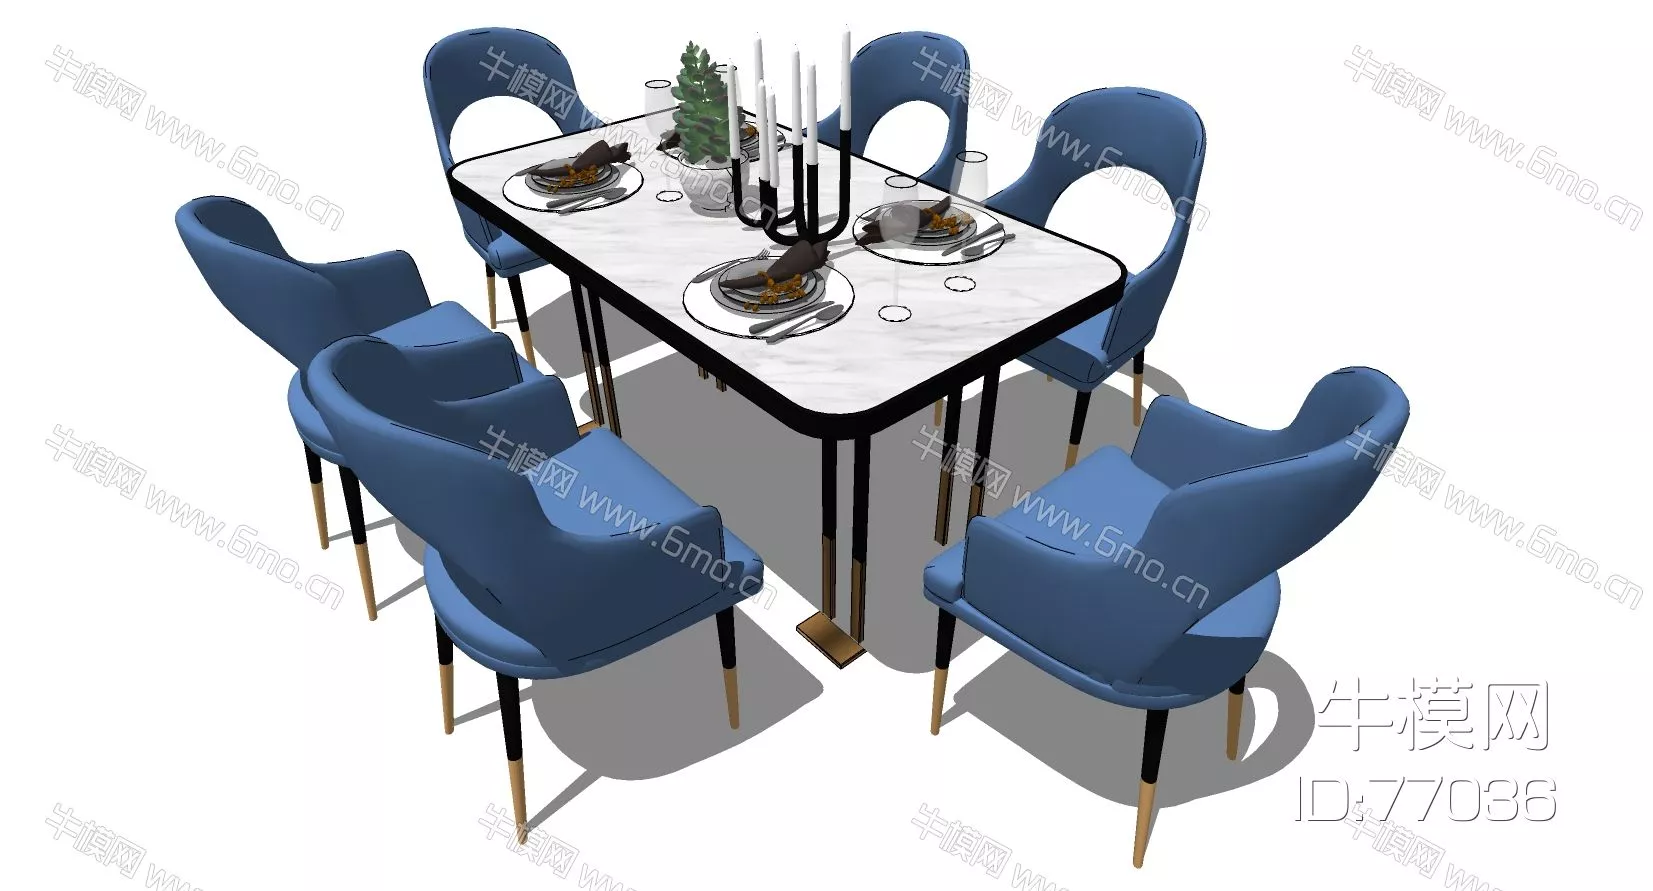 EUROPE DINING TABLE SET - SKETCHUP 3D MODEL - ENSCAPE - 77036